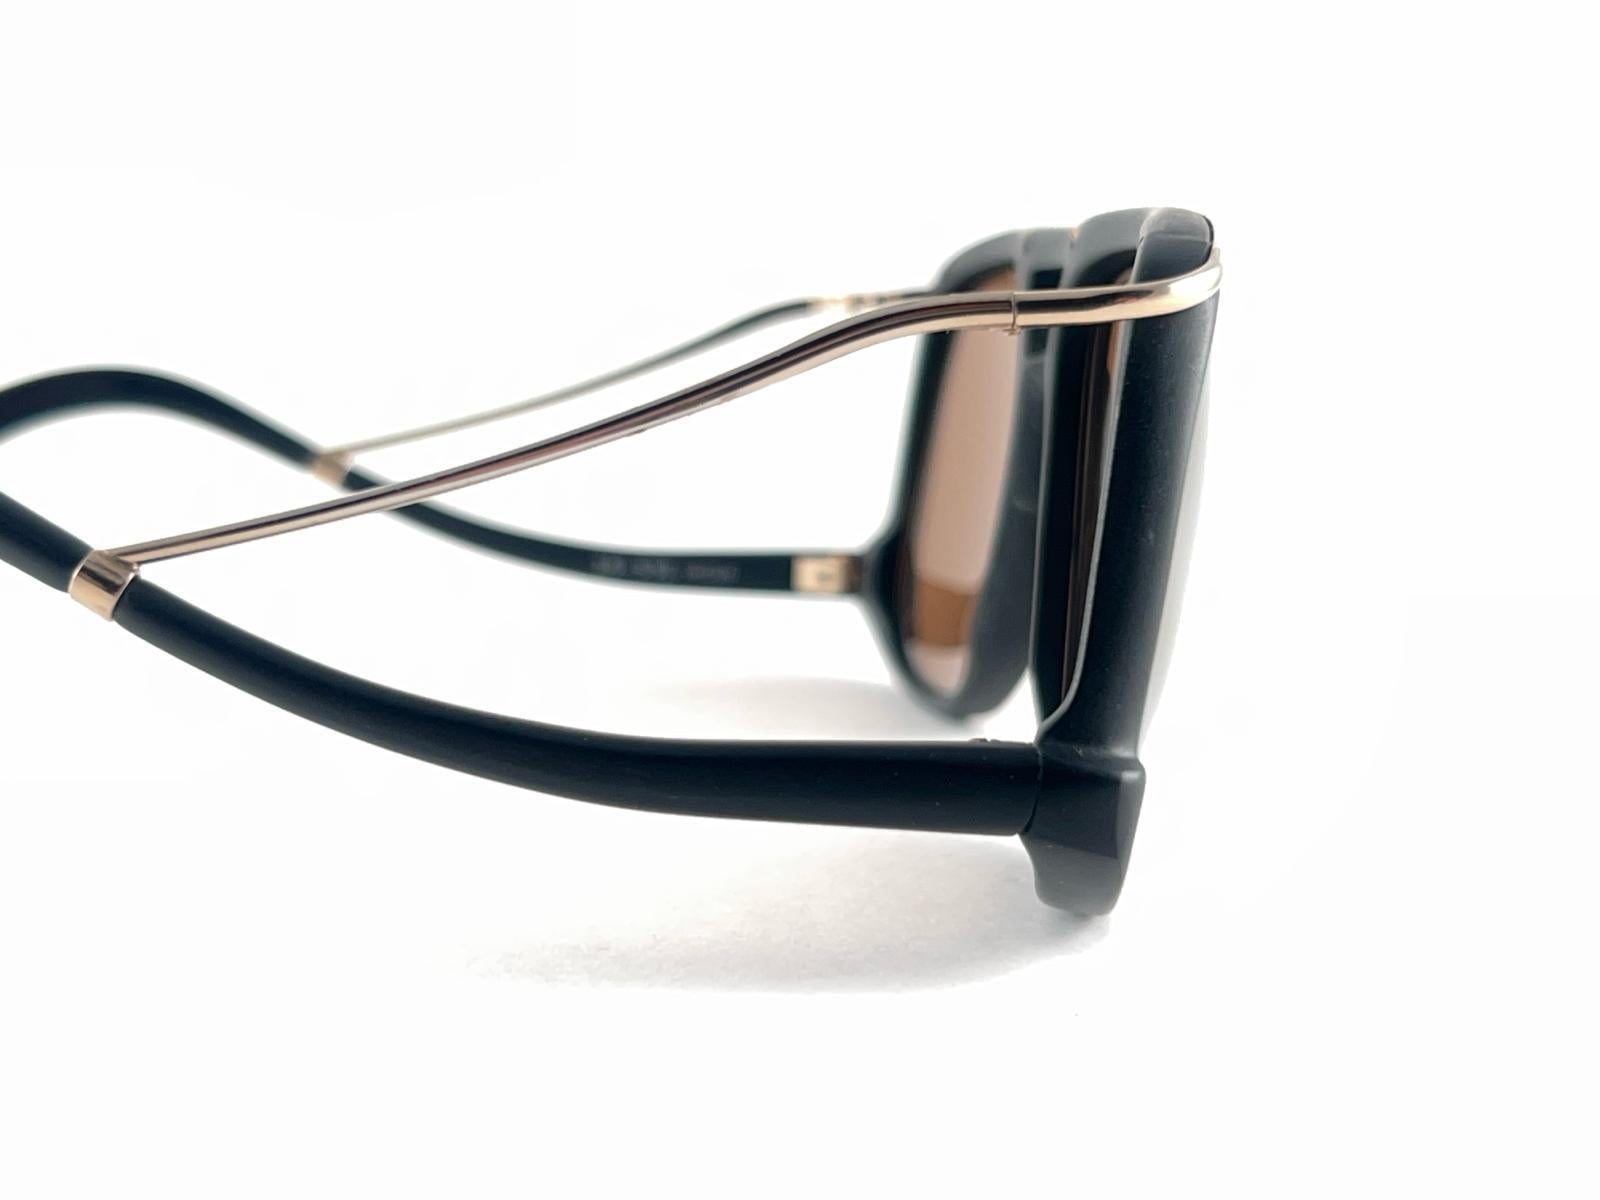 New Vintage Colani Design schwarz matt mit goldenen Akzenten Sonnenbrille. Ausgeschnittener Rahmen mit einem Paar goldener Spiegelgläser.

Nie getragen oder ausgestellt. Dieser Artikel kann aufgrund der fast 40-jährigen Lagerung leichte